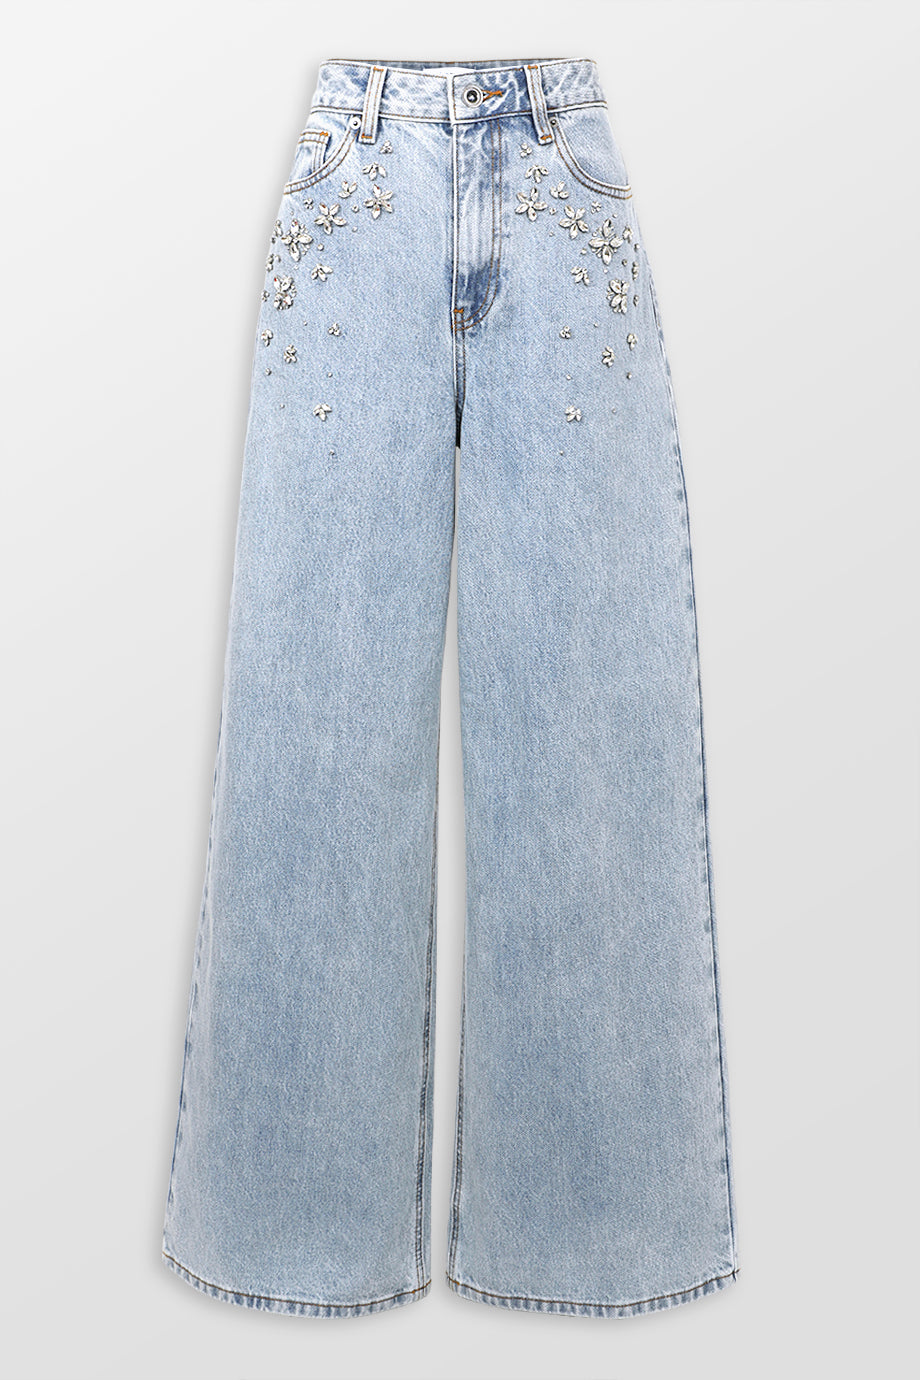 Embellished Jeans